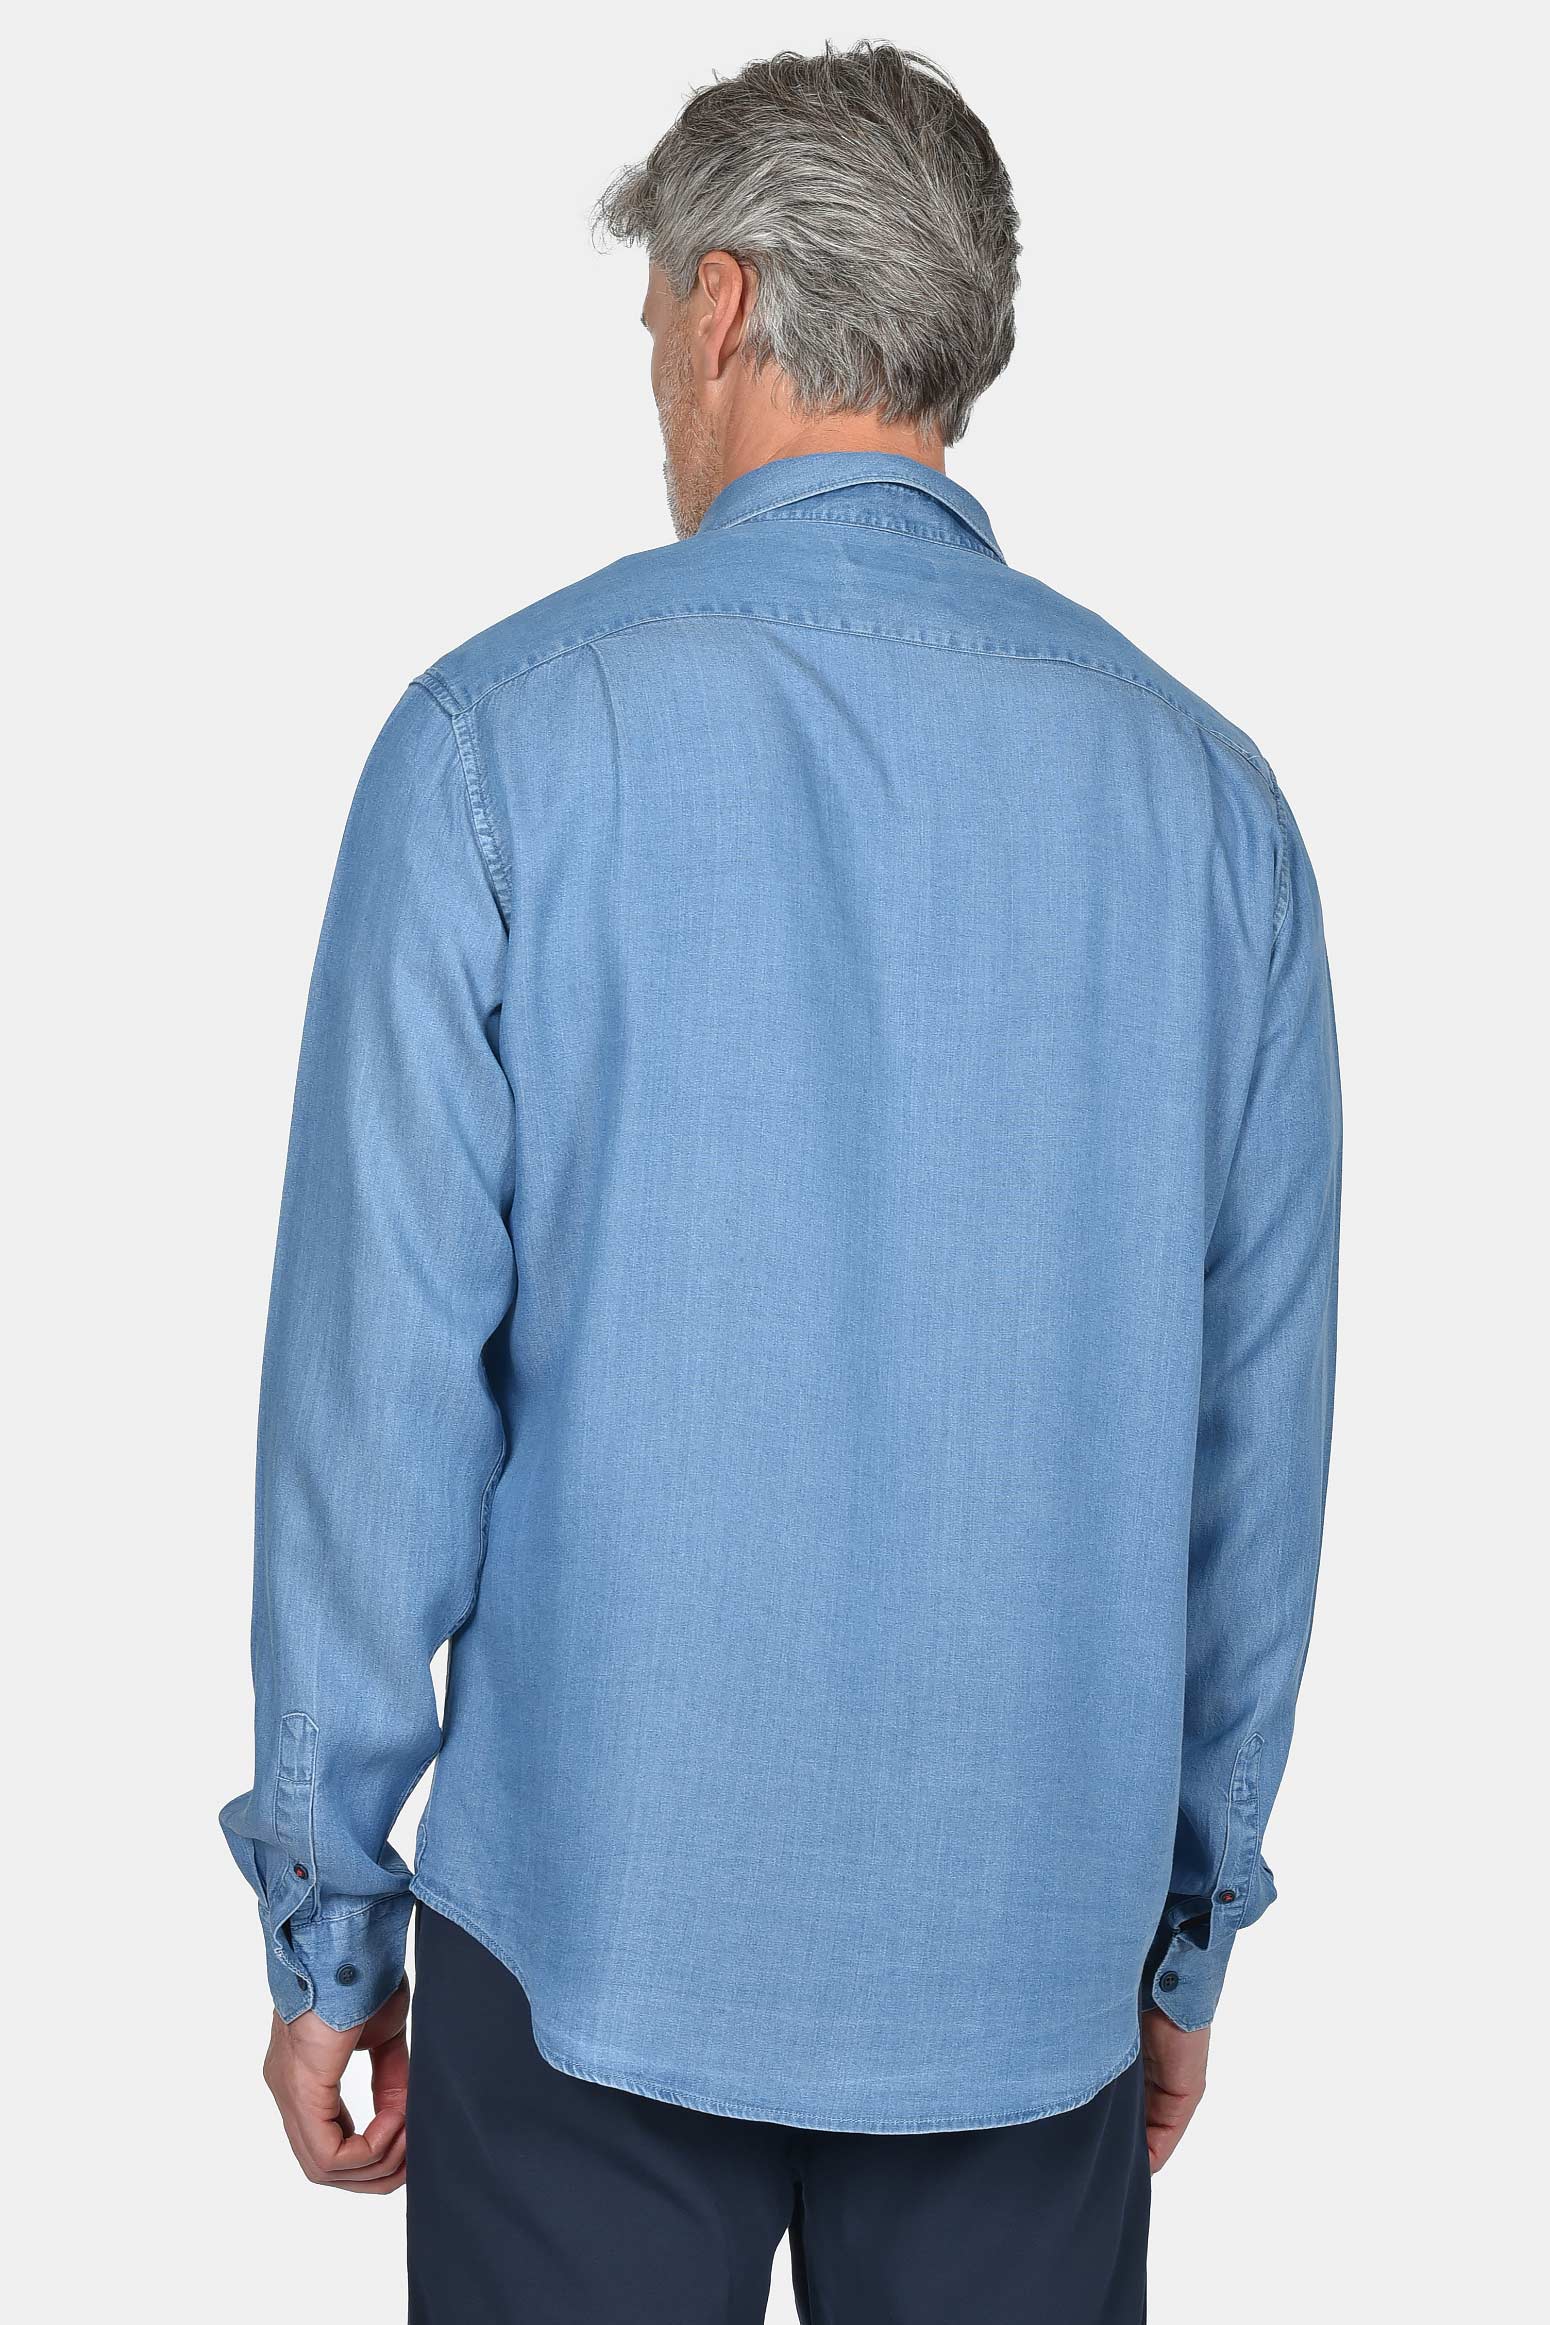 ανδρικό-τζιν-πουκάμισο-100%-tencel